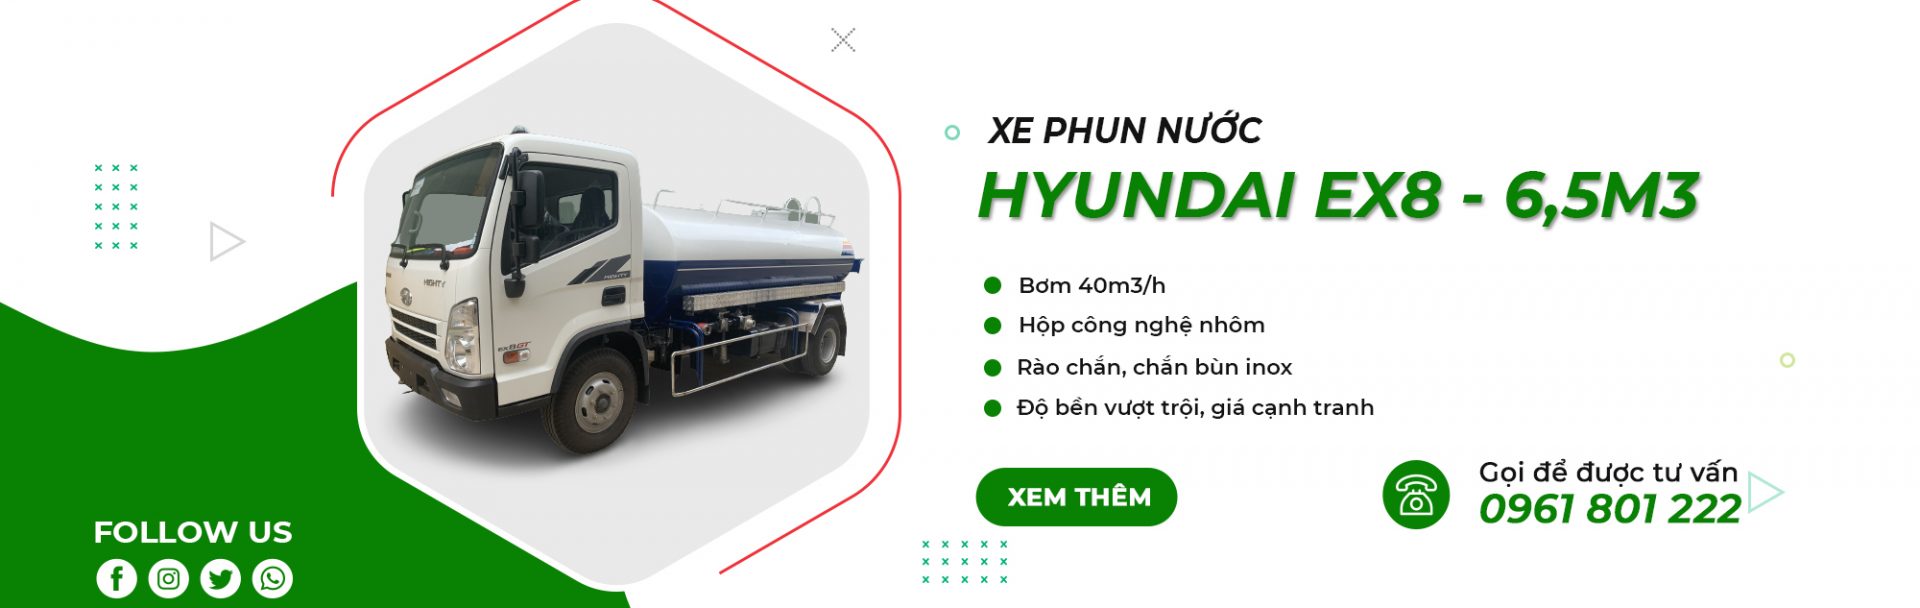 Xe phun nước Hyundai EX8